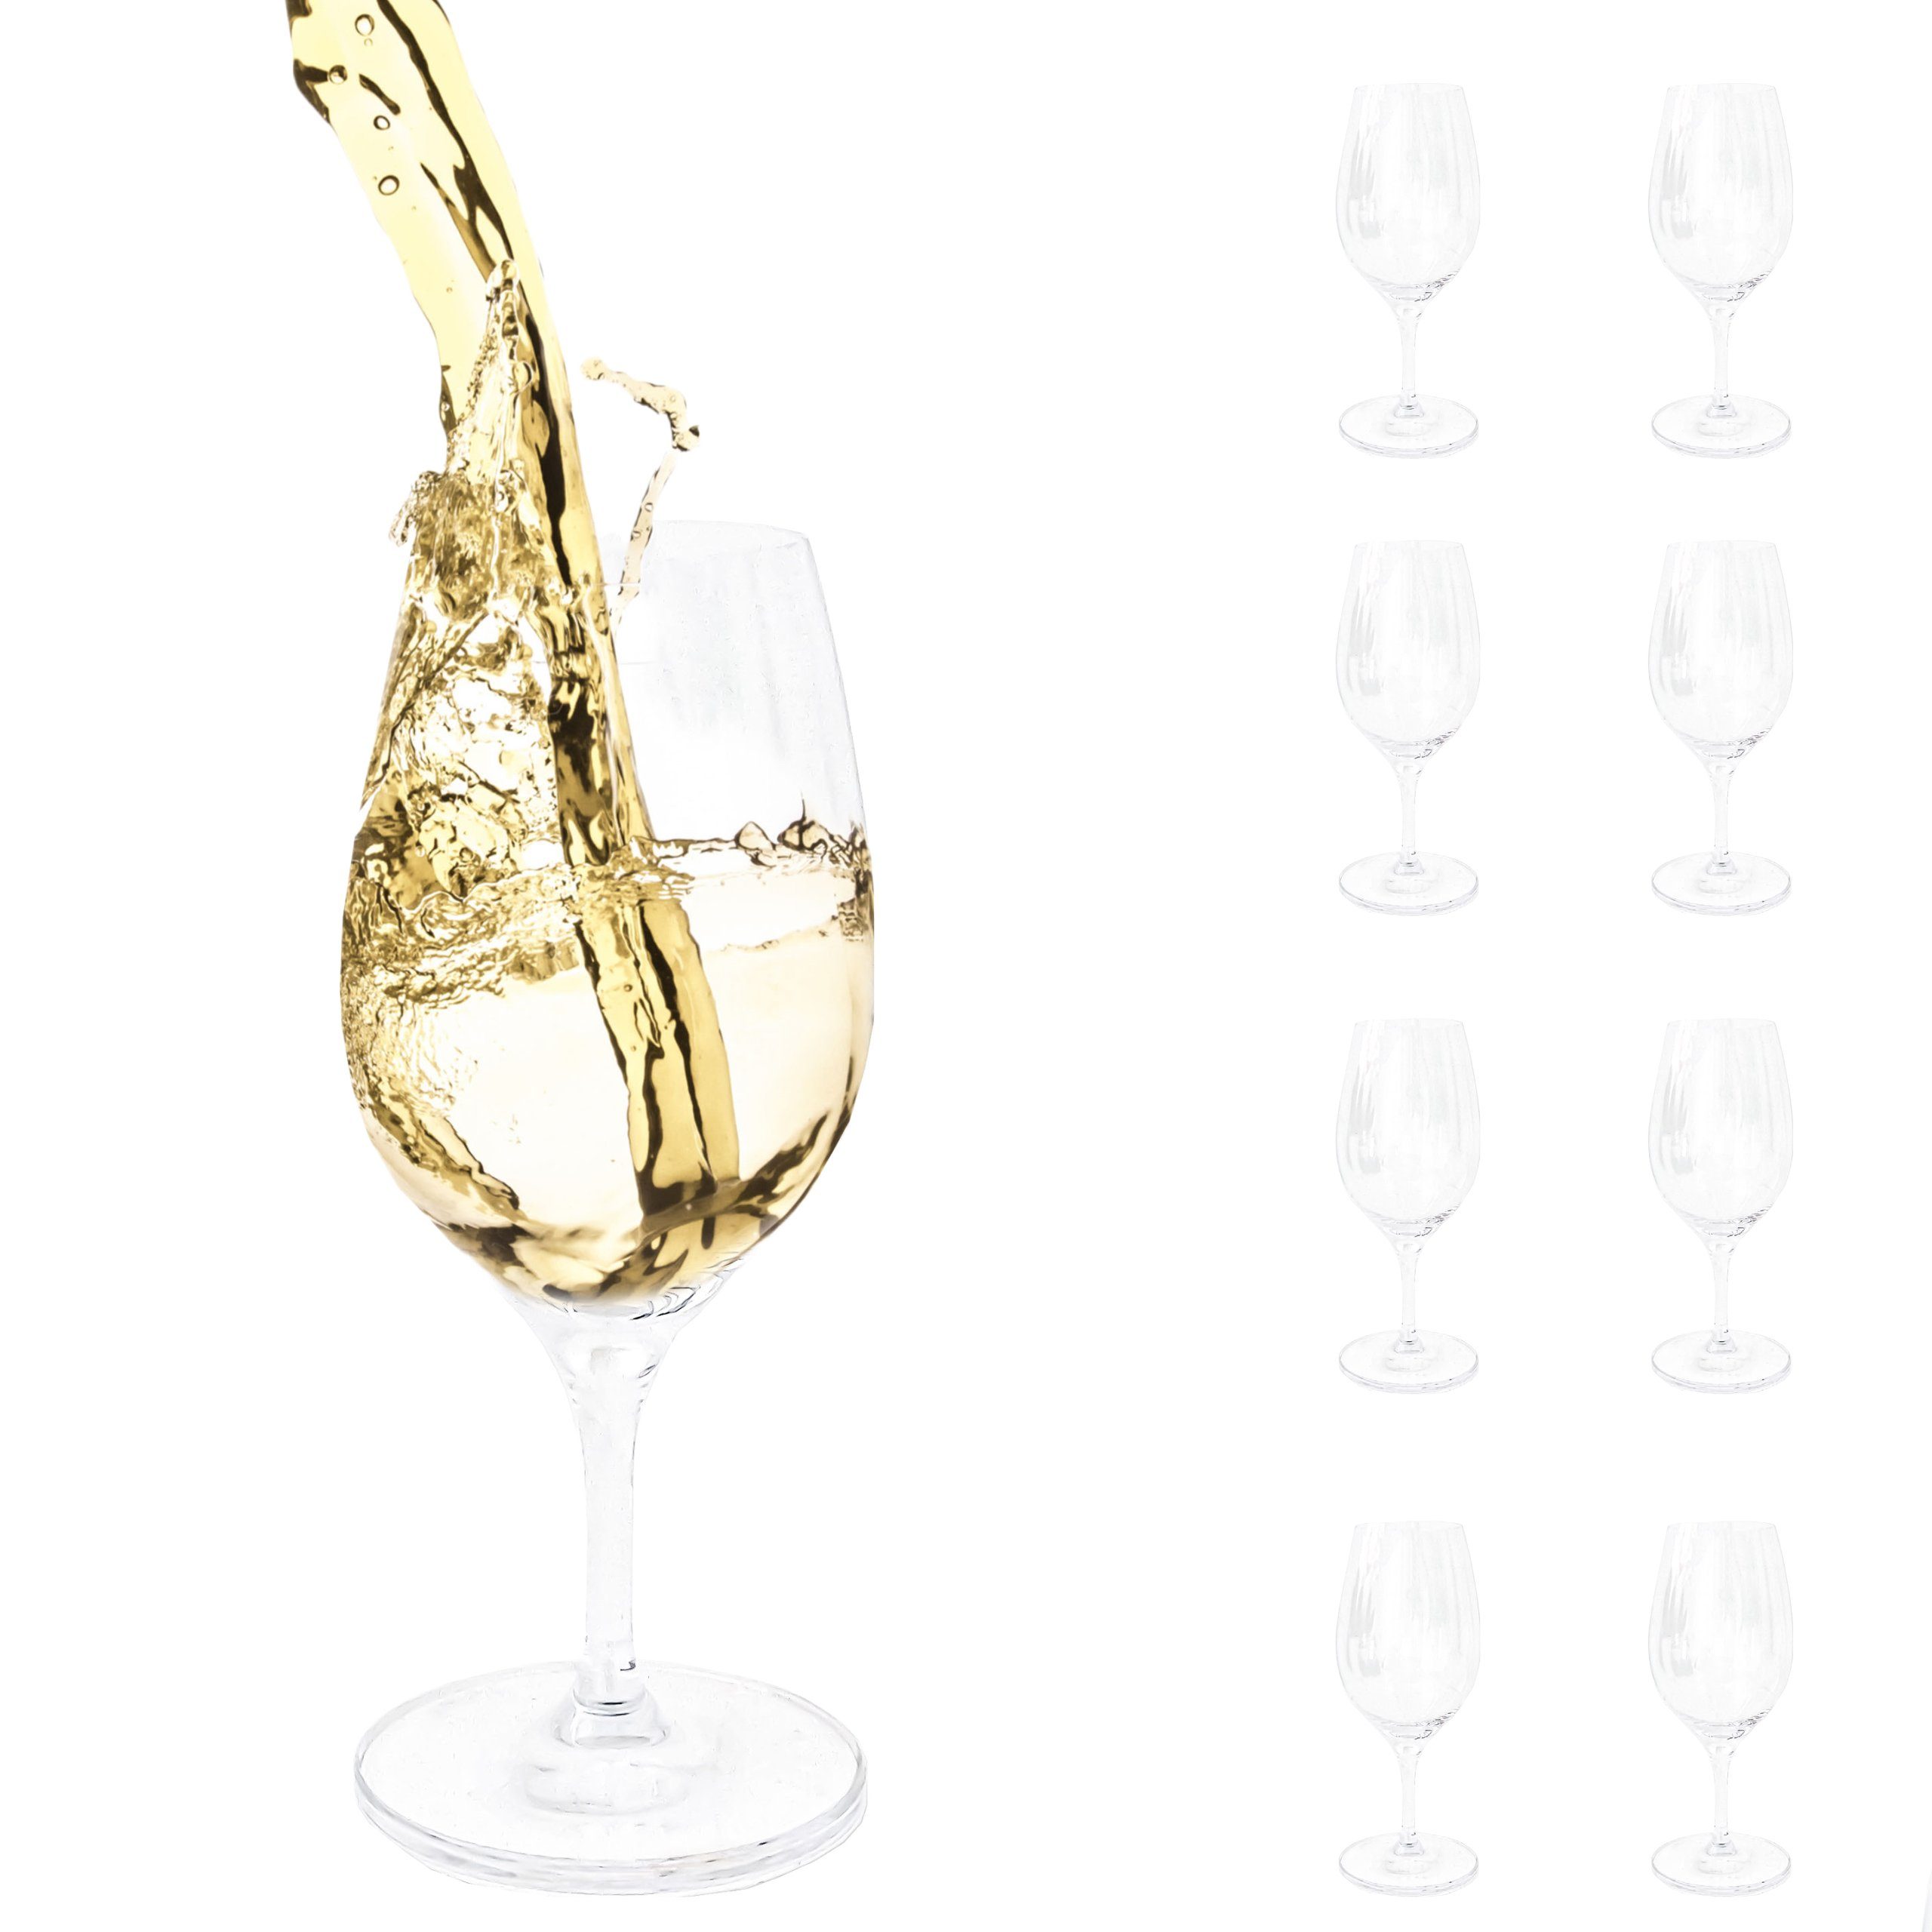 PassionMade Weißweinglas Бокалы для белого вина 8er Set Spiegelau Weiß Wein 1080, Kristallglas, Spiegelau Бокалы для белого вина 8er Set